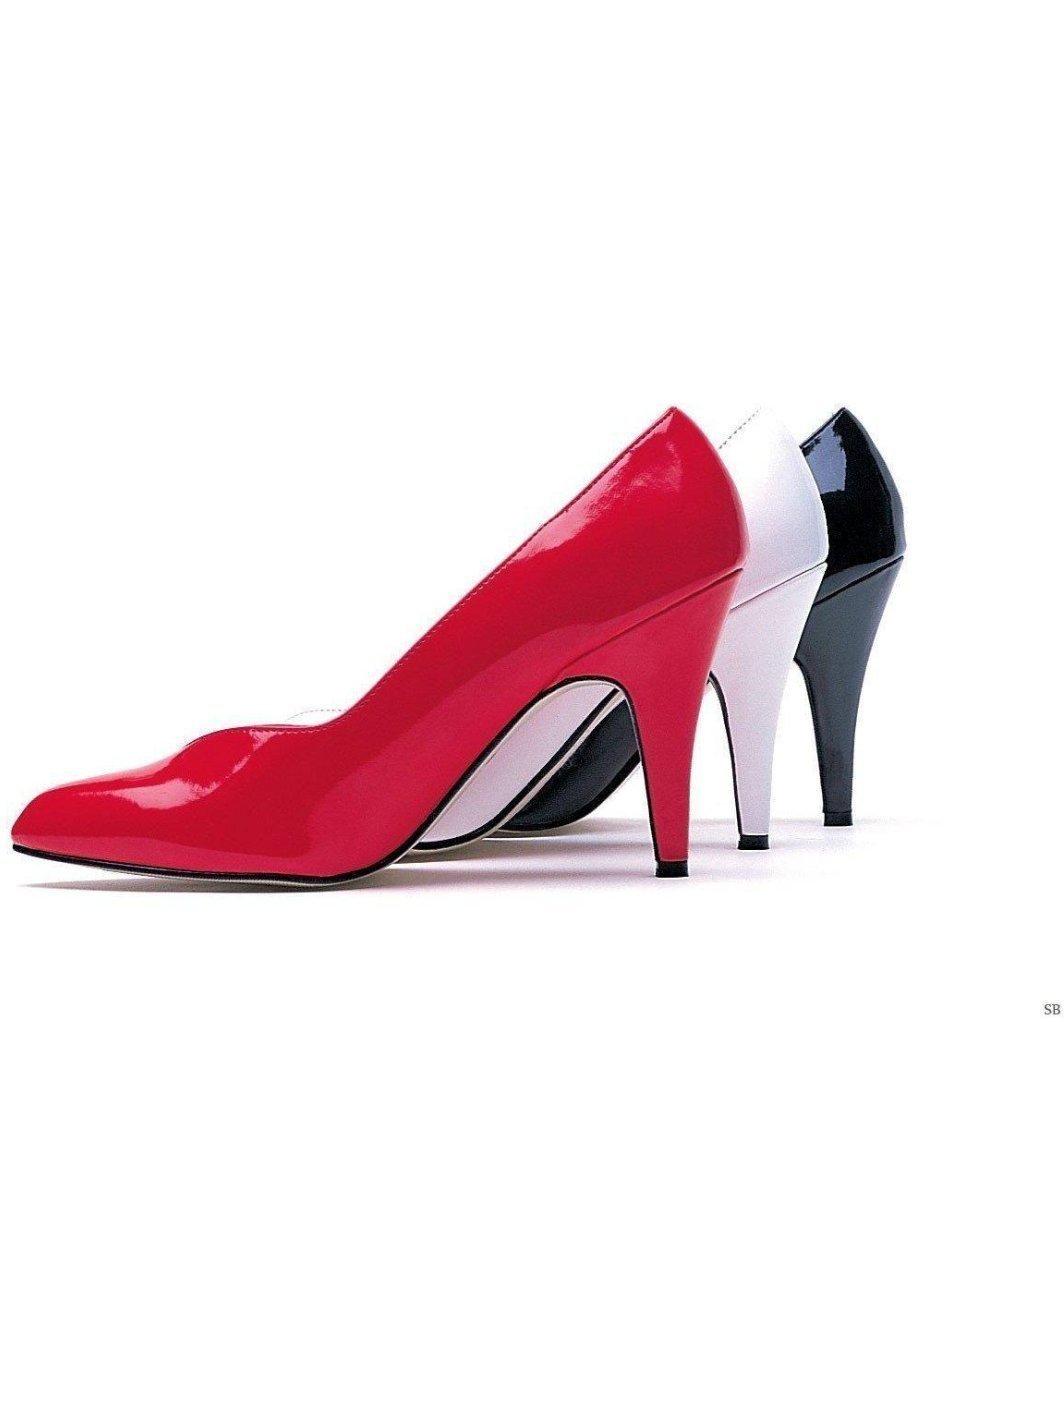 8240-D, 4" High Heel Wide Width Pump Shoes - image 2 of 2